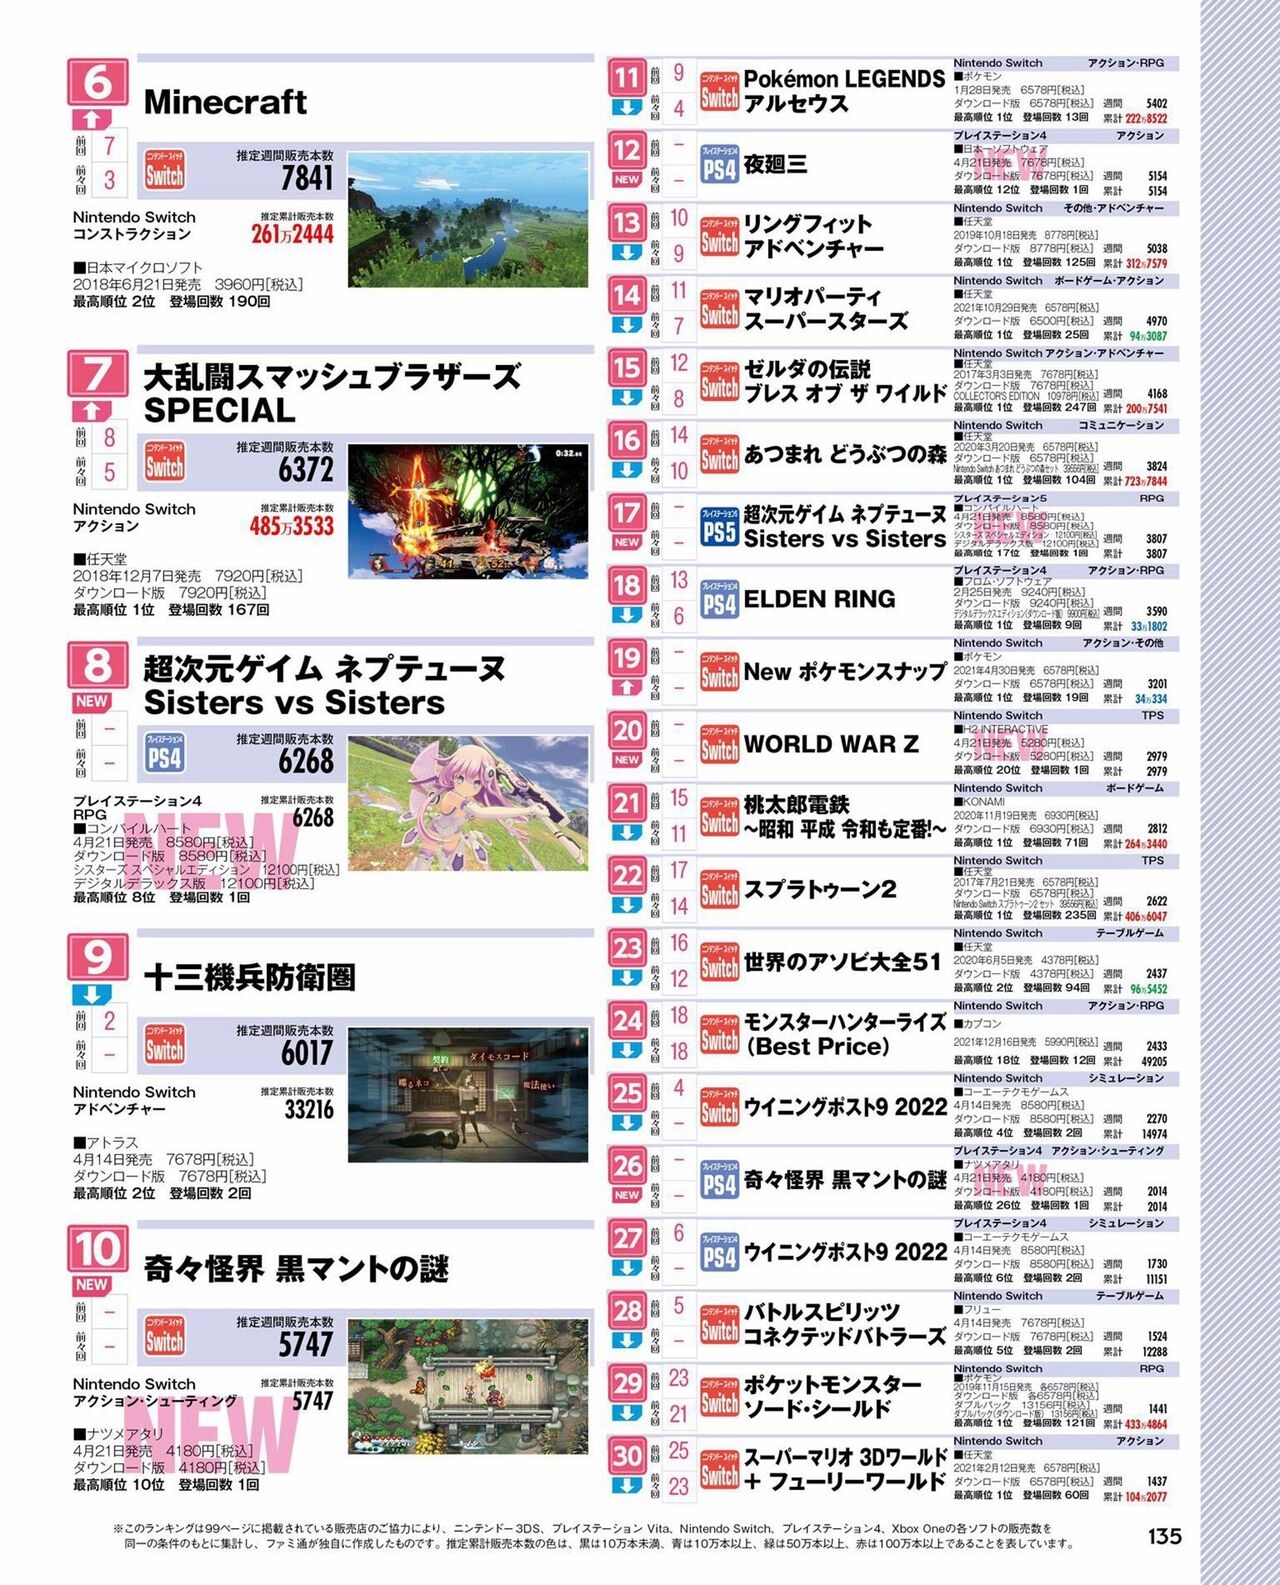 Weekly Famitsu 2022 6 2 134